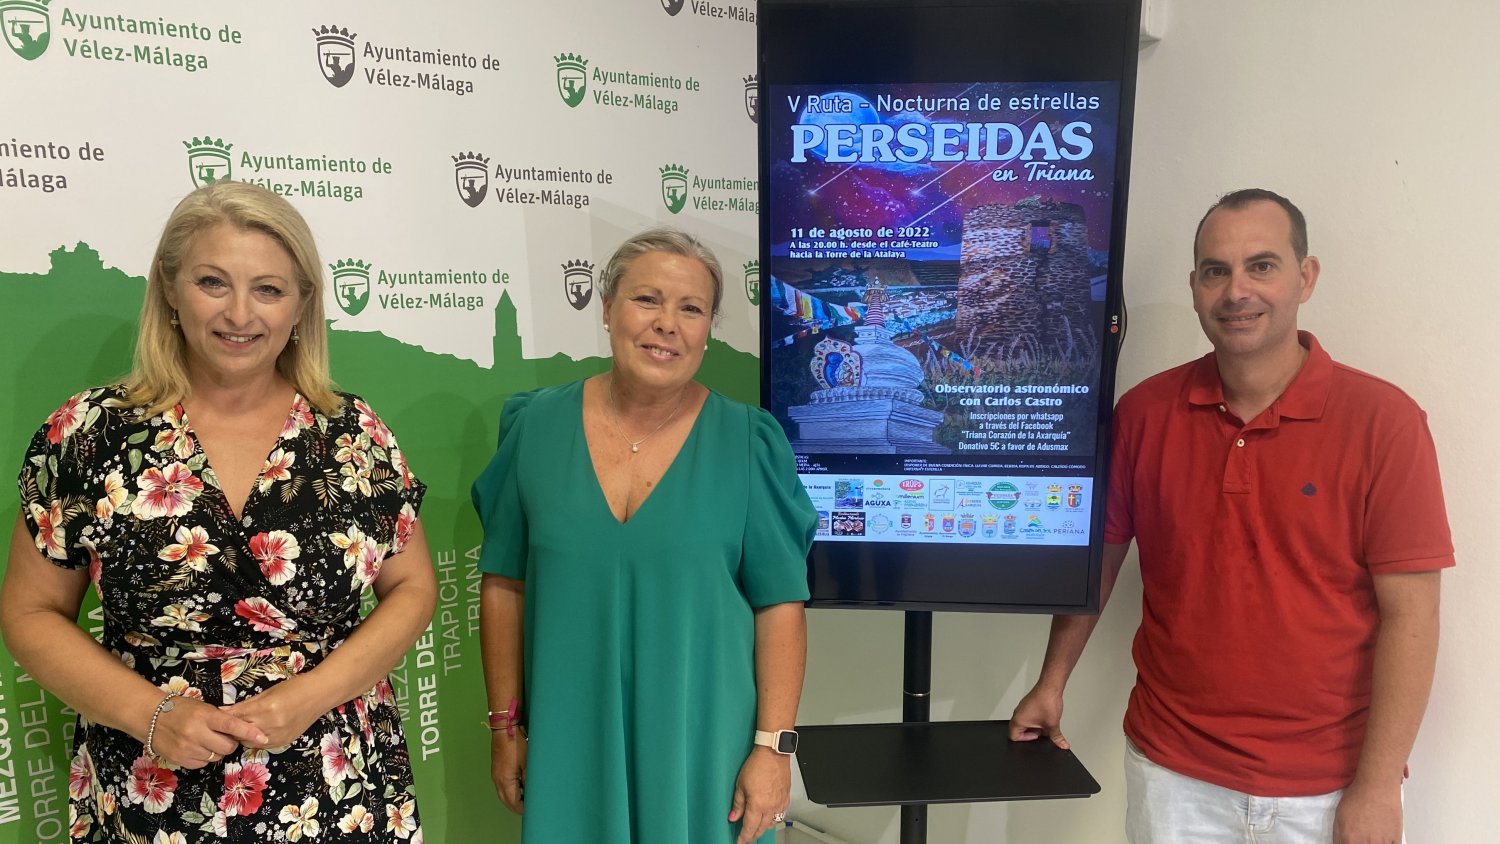 Vélez-Málaga presenta la quinta ruta nocturna de Triana para contemplar las Perseidas